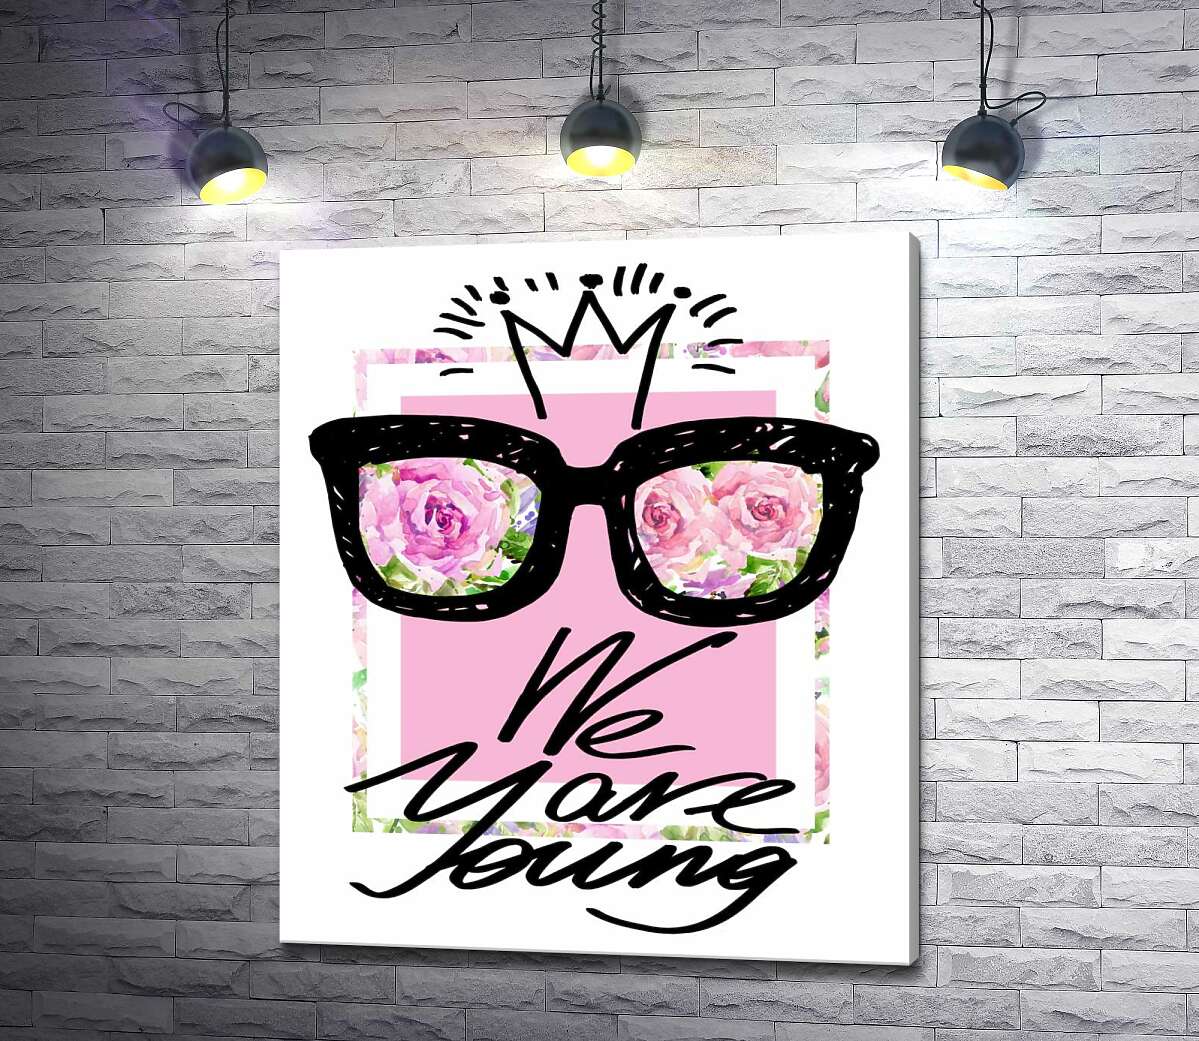 картина Черные очки с короной над надписью "we are young"